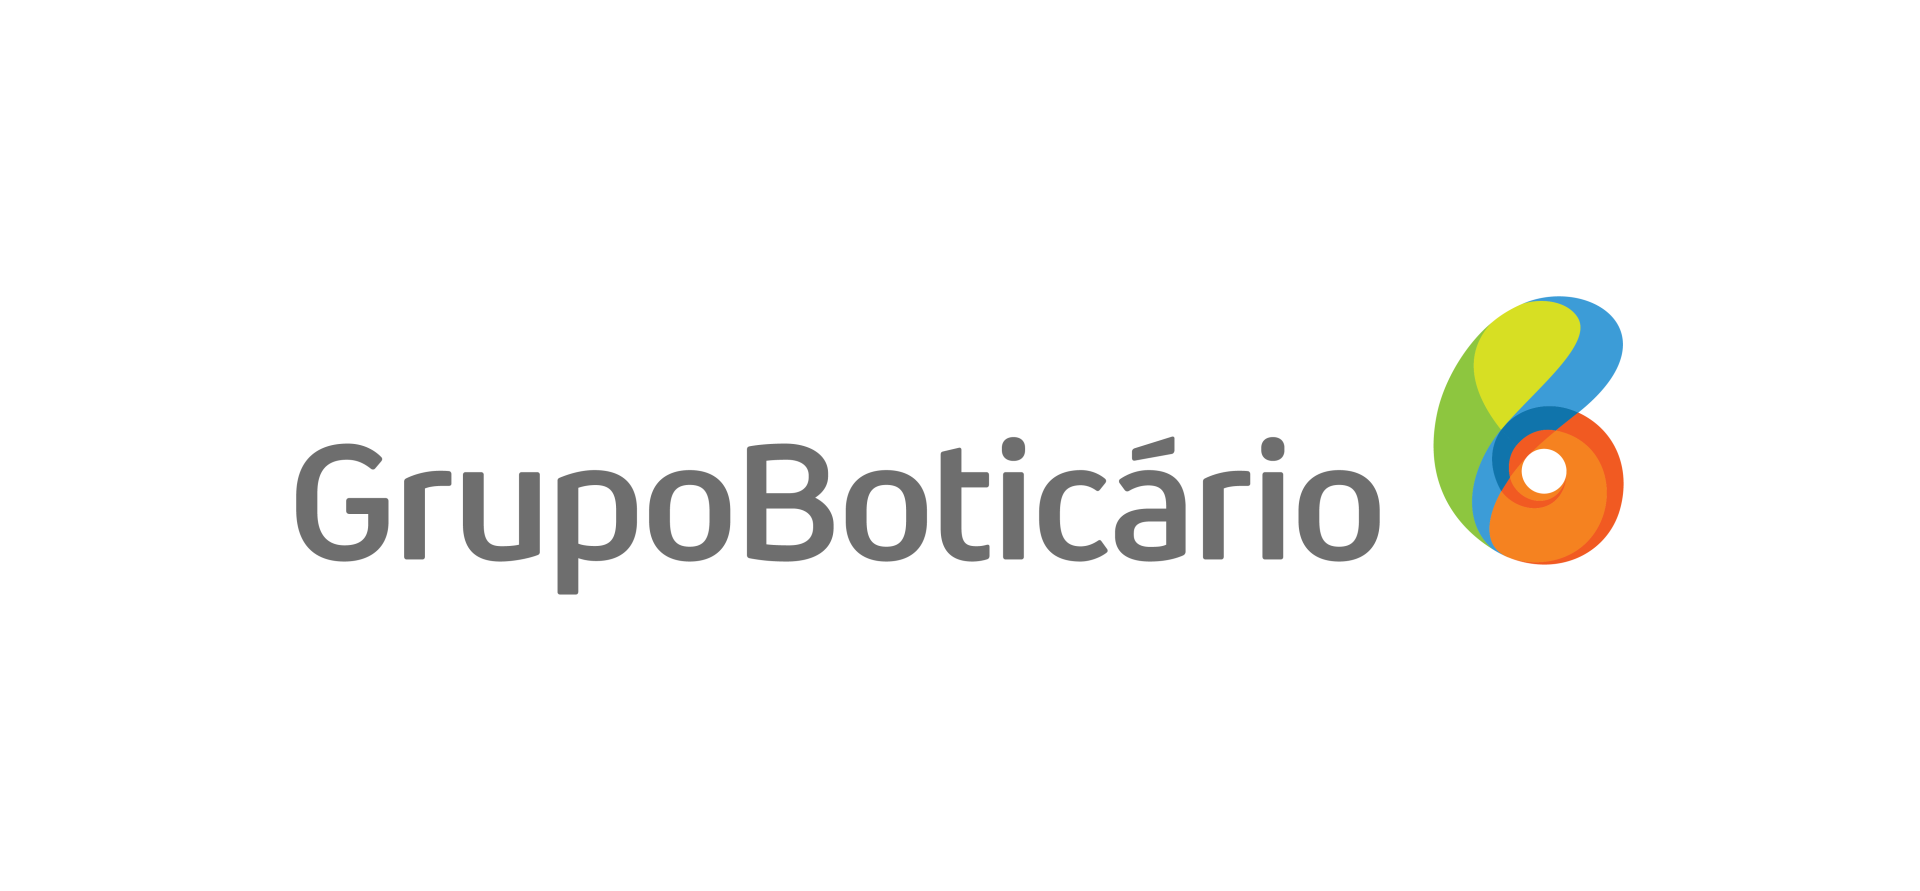 O logotipo do grupboticaro em um fundo preto com detalhes da Accenture.